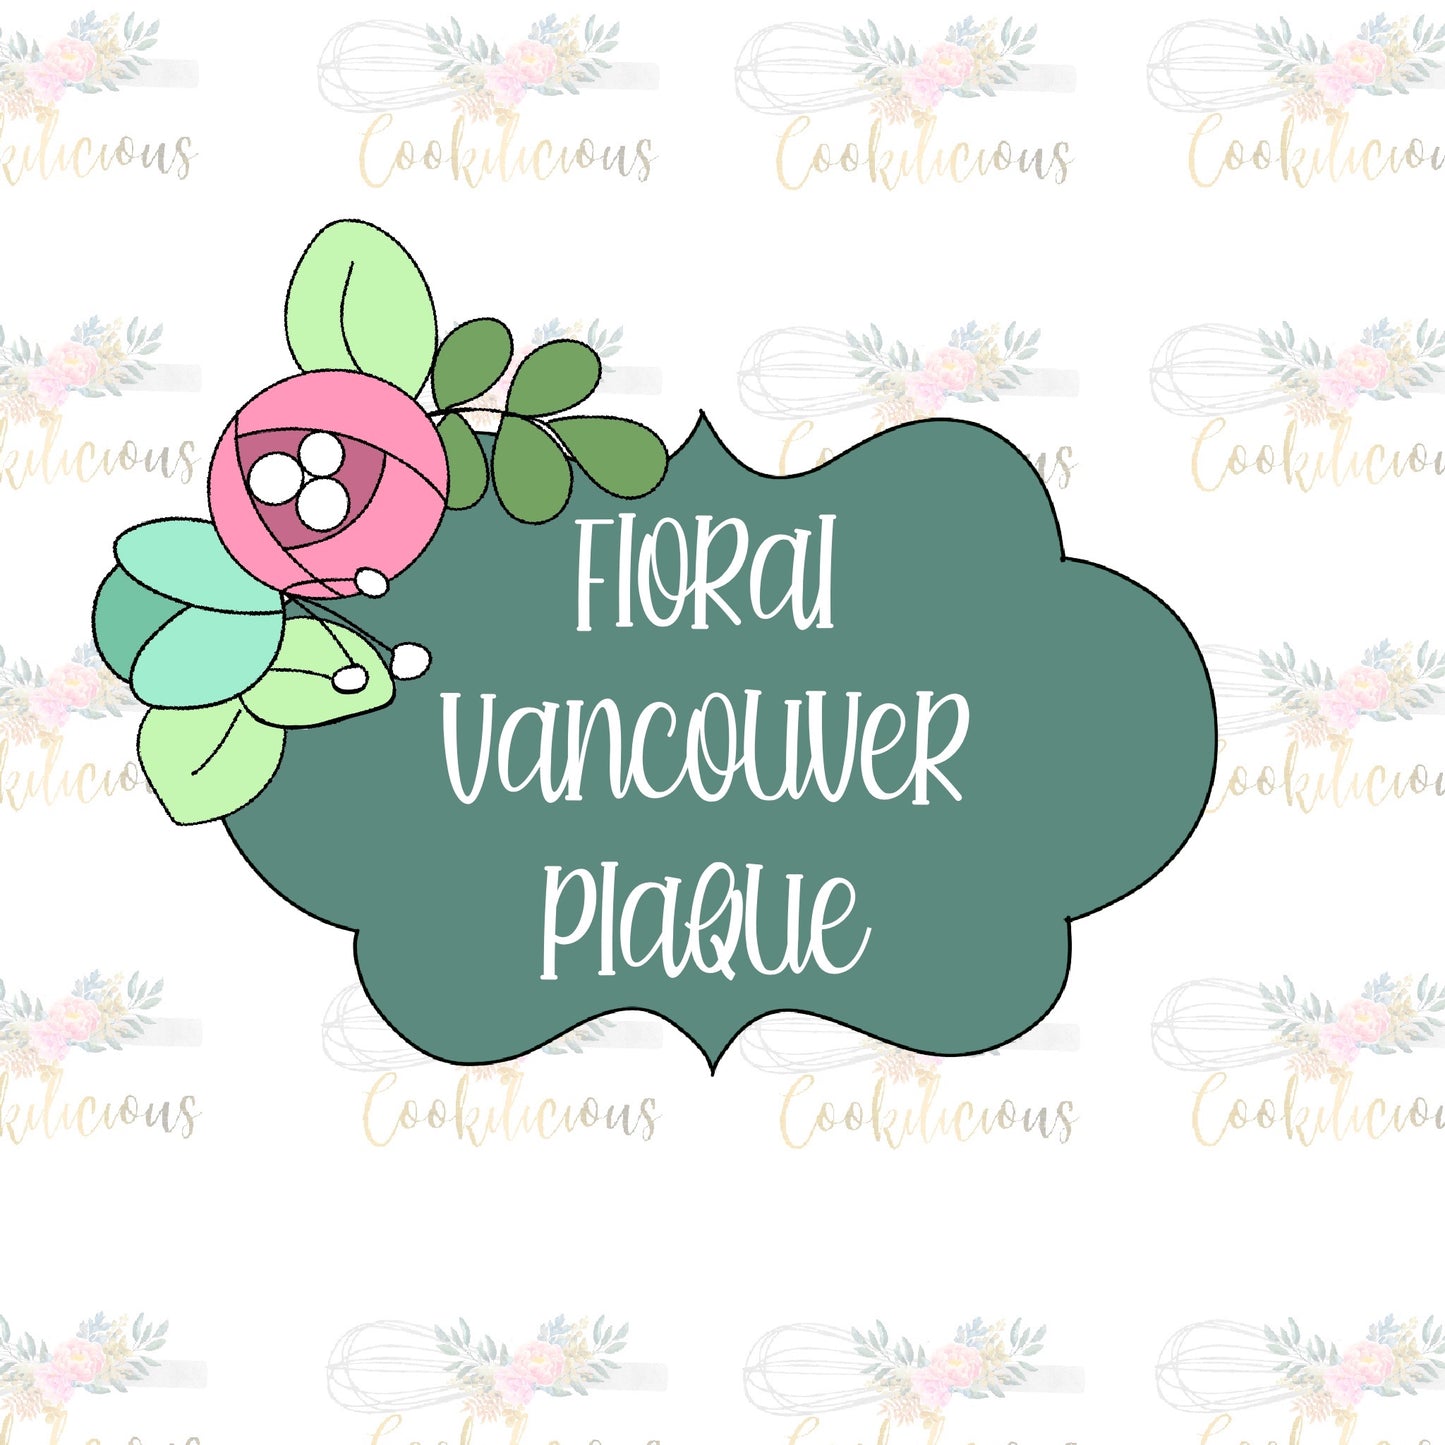 Floral Vancouver Plaque